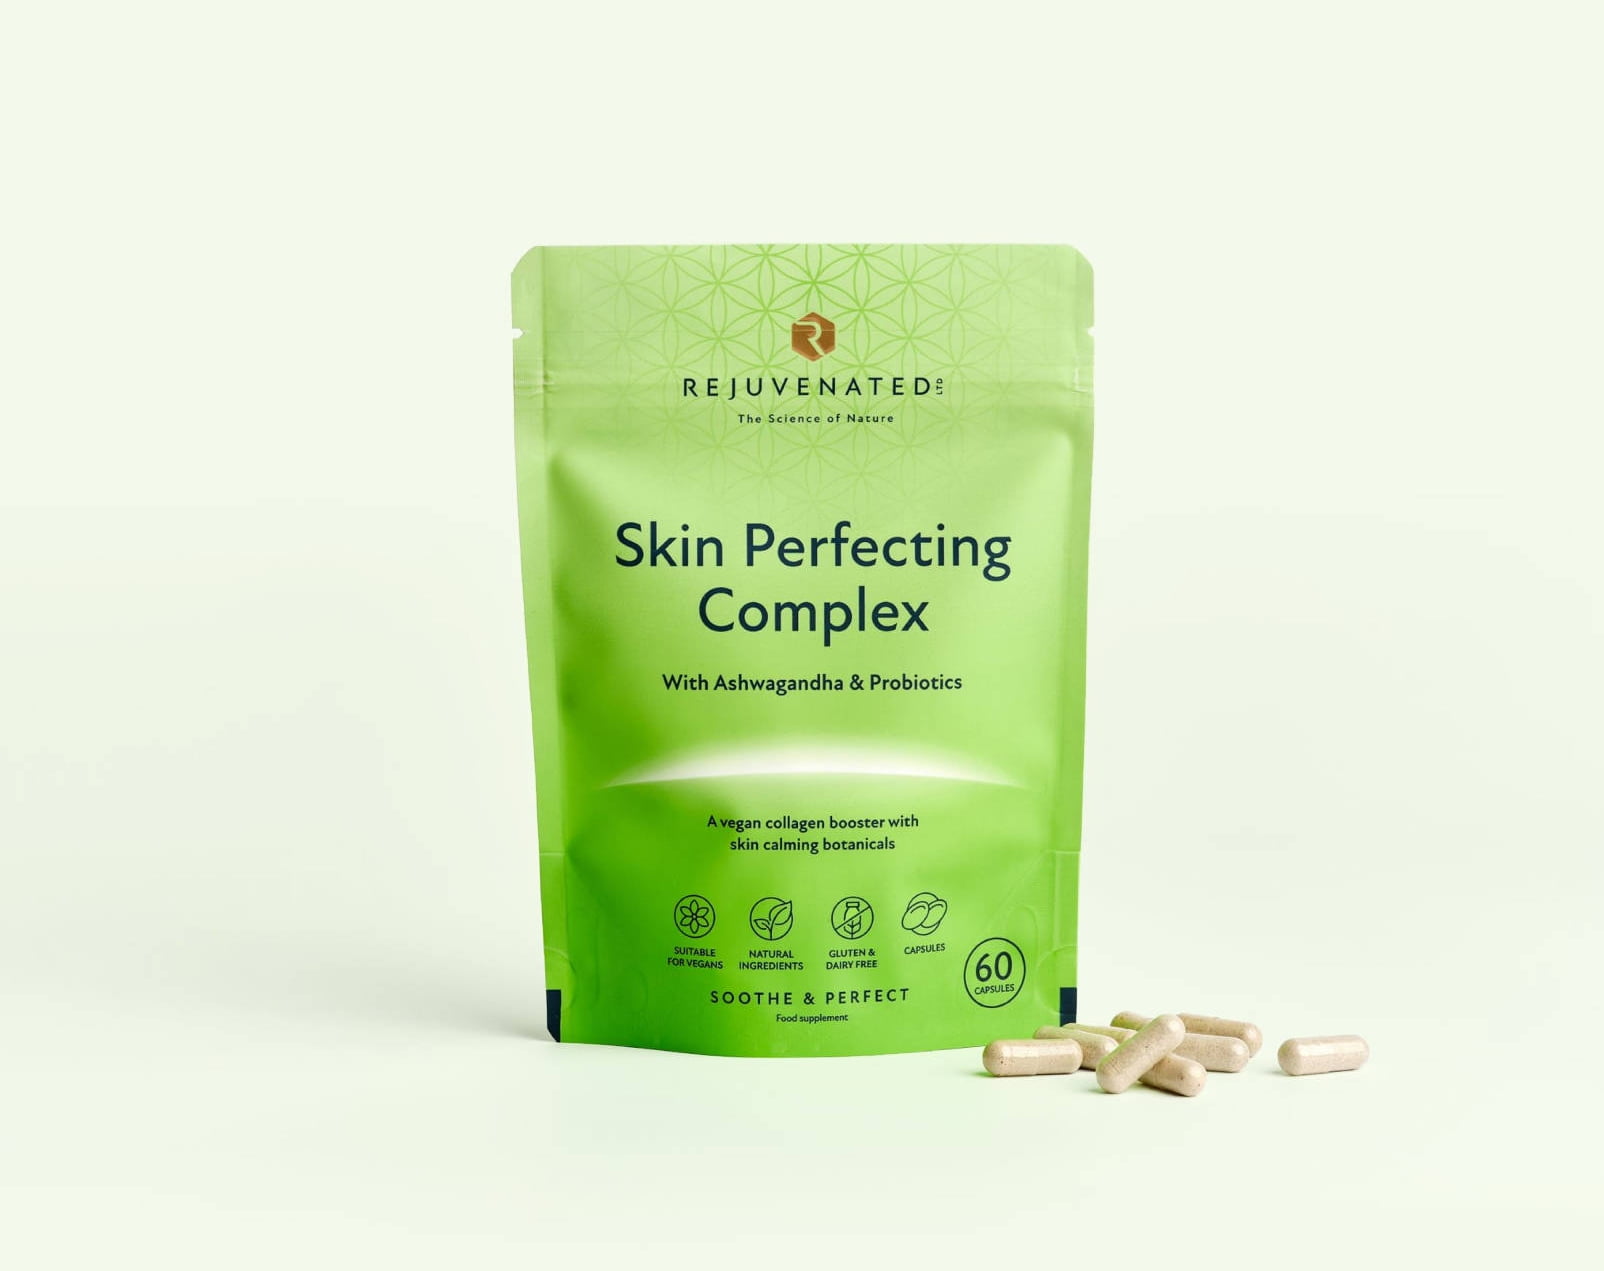 Rejuvenated Skin Perfecting Complex